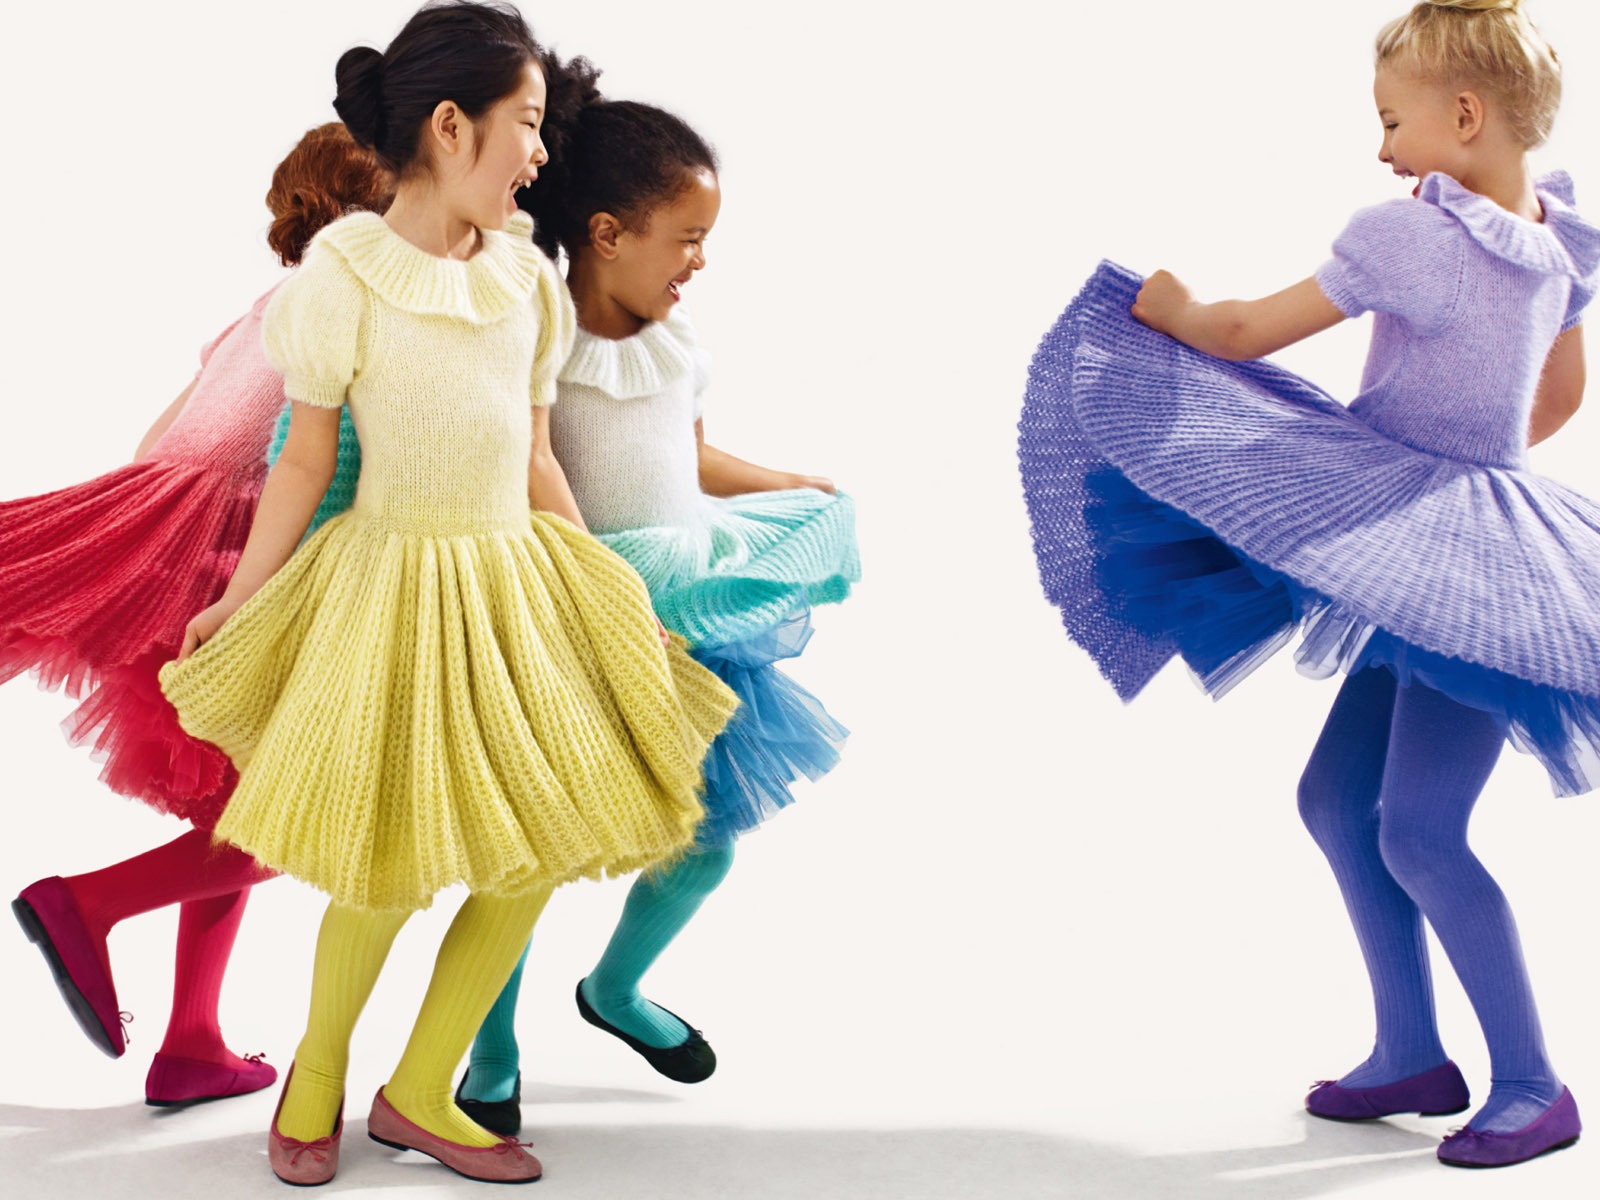 Colorful Children's Fashion Wallpaper (3) #13 - 1600x1200